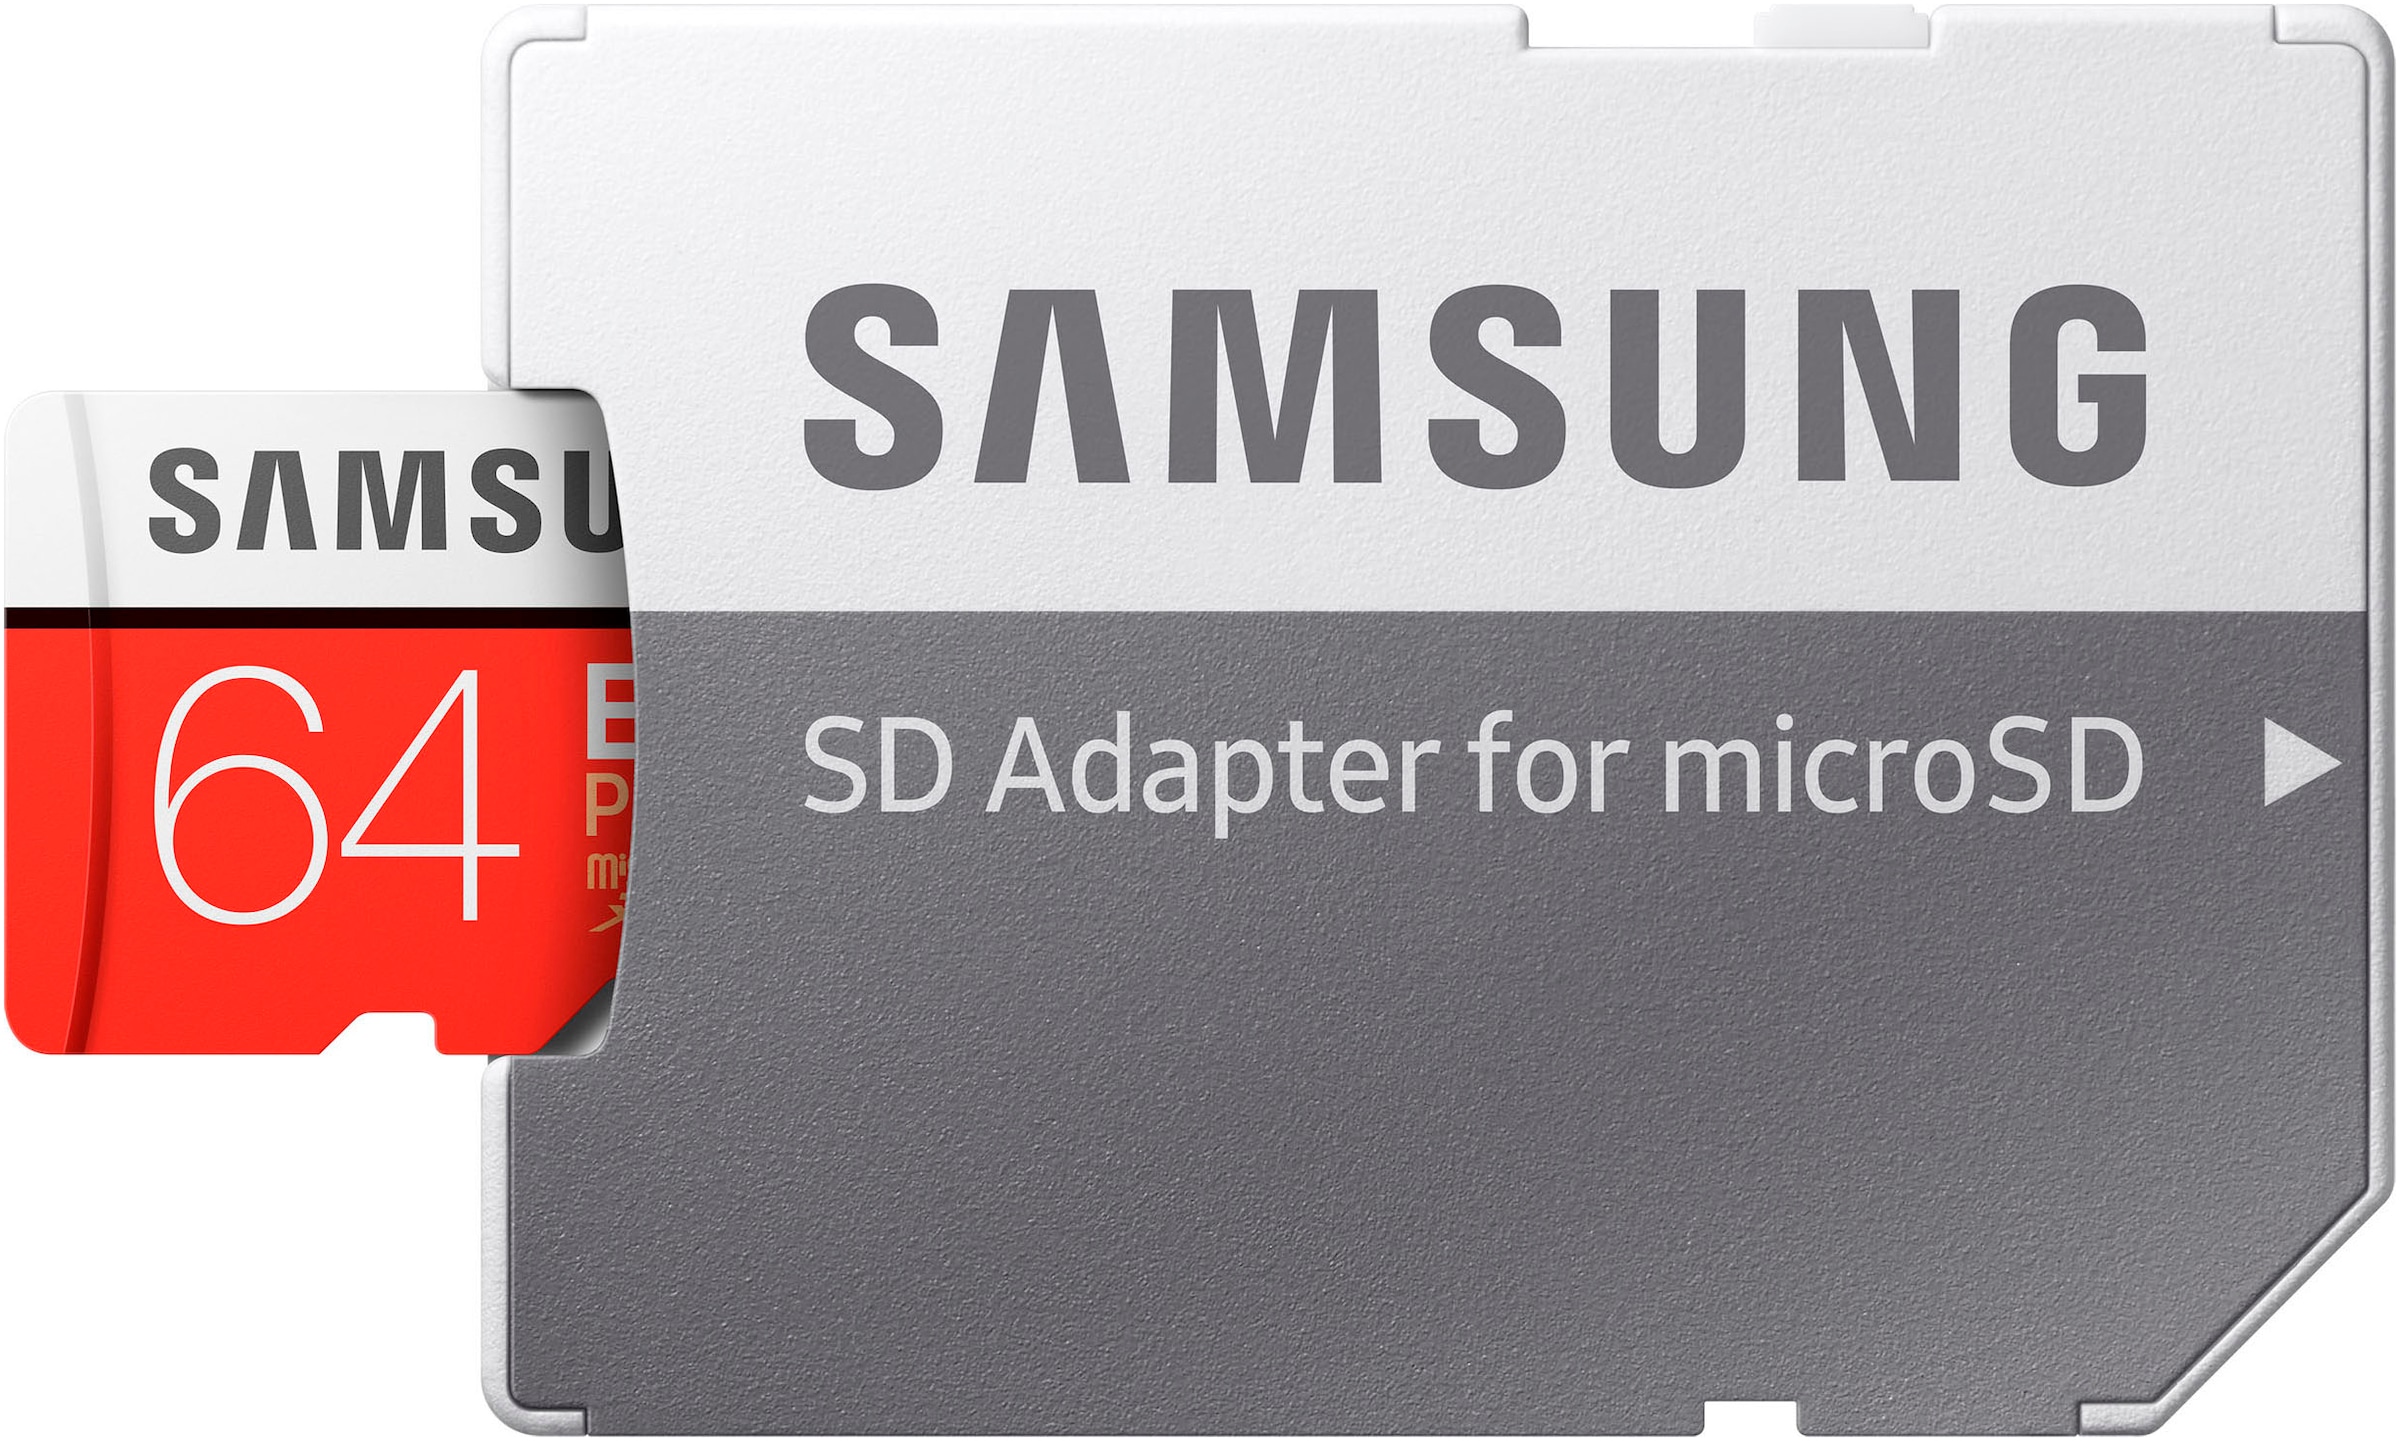 Samsung Speicherkarte »Evo Plus 64GB«, (UHS-I Class 10 100 MB/s Lesegeschwindigkeit)